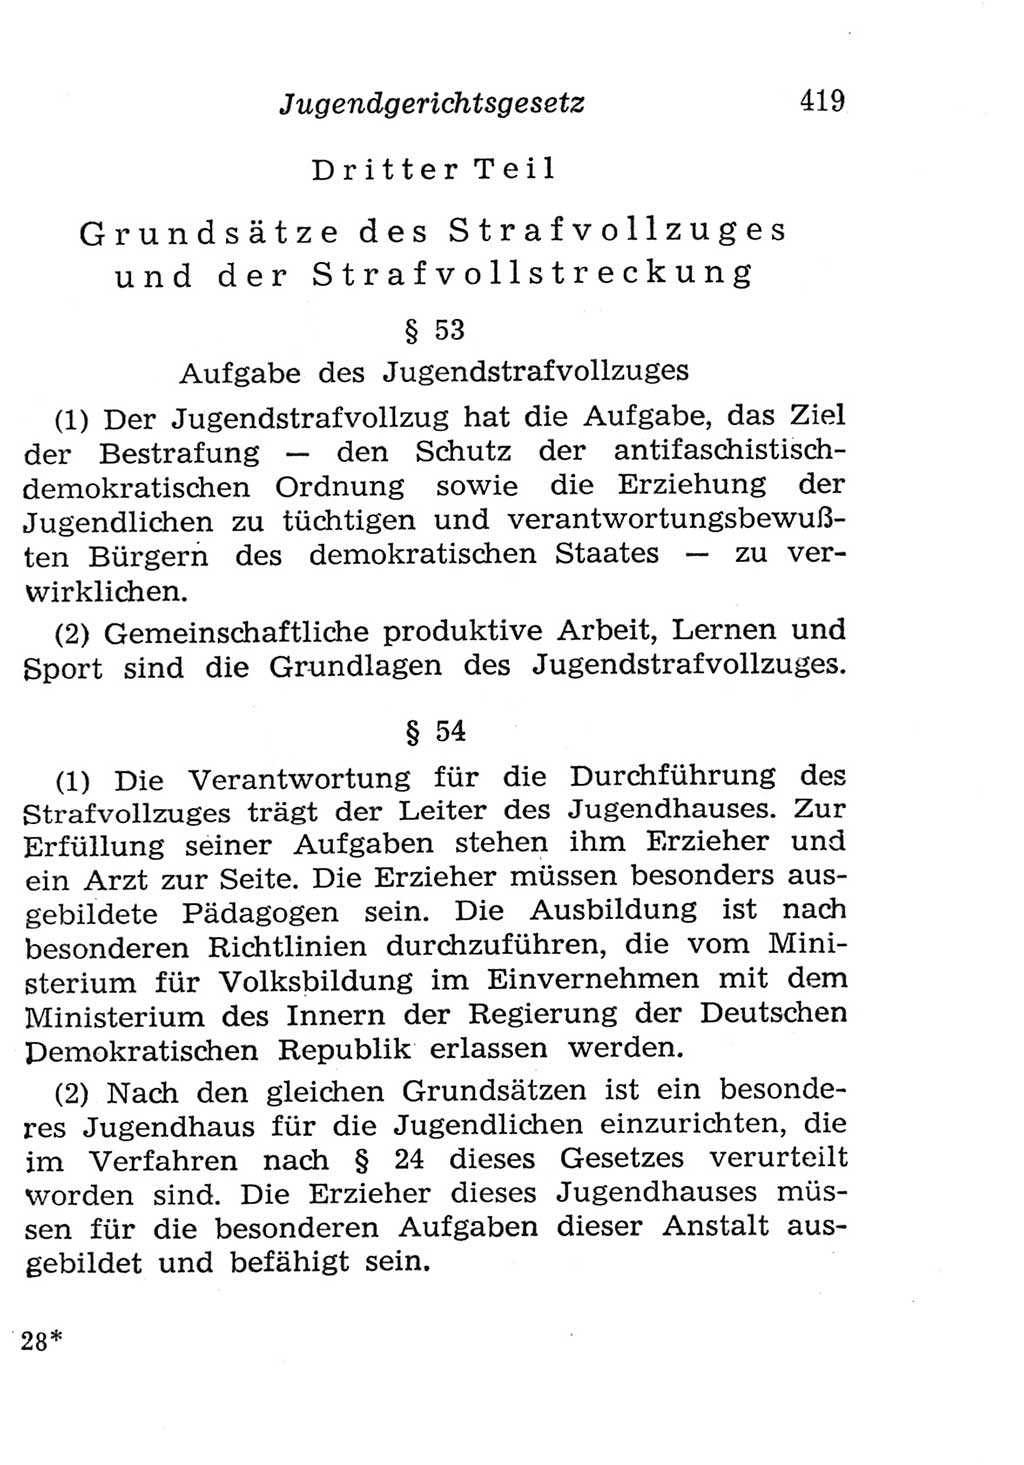 Strafgesetzbuch (StGB) und andere Strafgesetze [Deutsche Demokratische Republik (DDR)] 1957, Seite 419 (StGB Strafges. DDR 1957, S. 419)